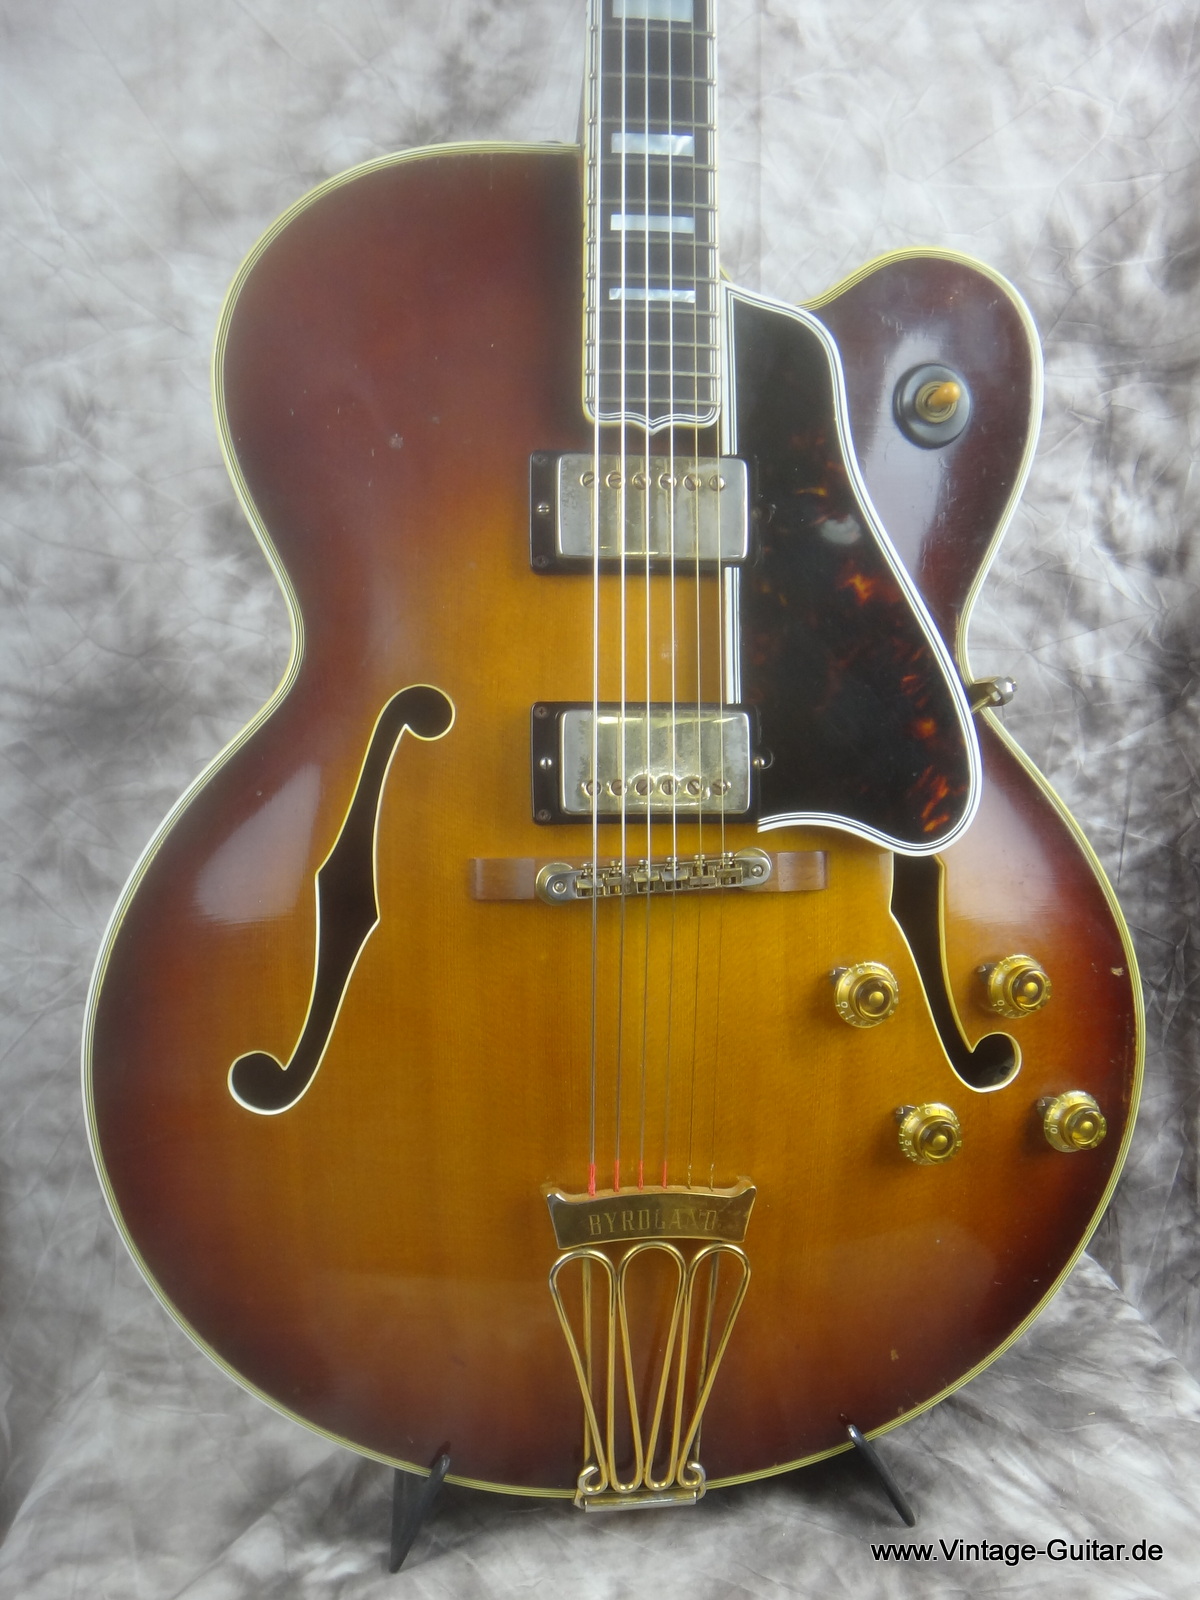 Gibson_Byrdland-1960_sunburst-PAFs-002.JPG